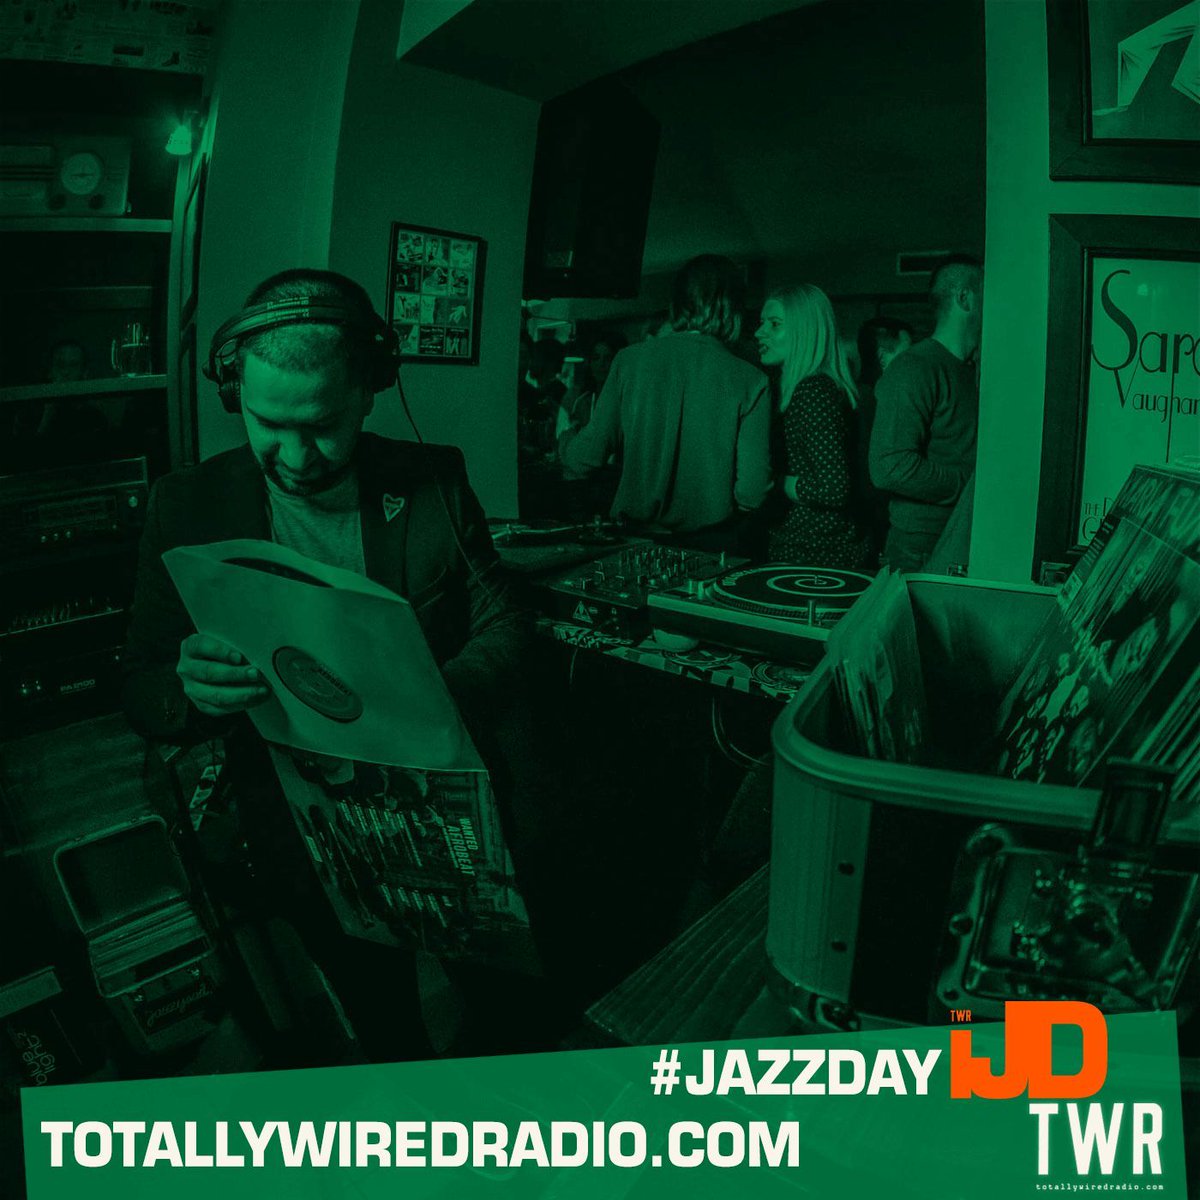 Jazz Is Dance #JAZZDAY w/ Jazzysad #startingsoon on #TotallyWiredRadio Listen @ Link in bio. 
-
#MusicIsLife #London #Serbia 
-
#Jazz #NuJazz #JazzDance #Jazzysad